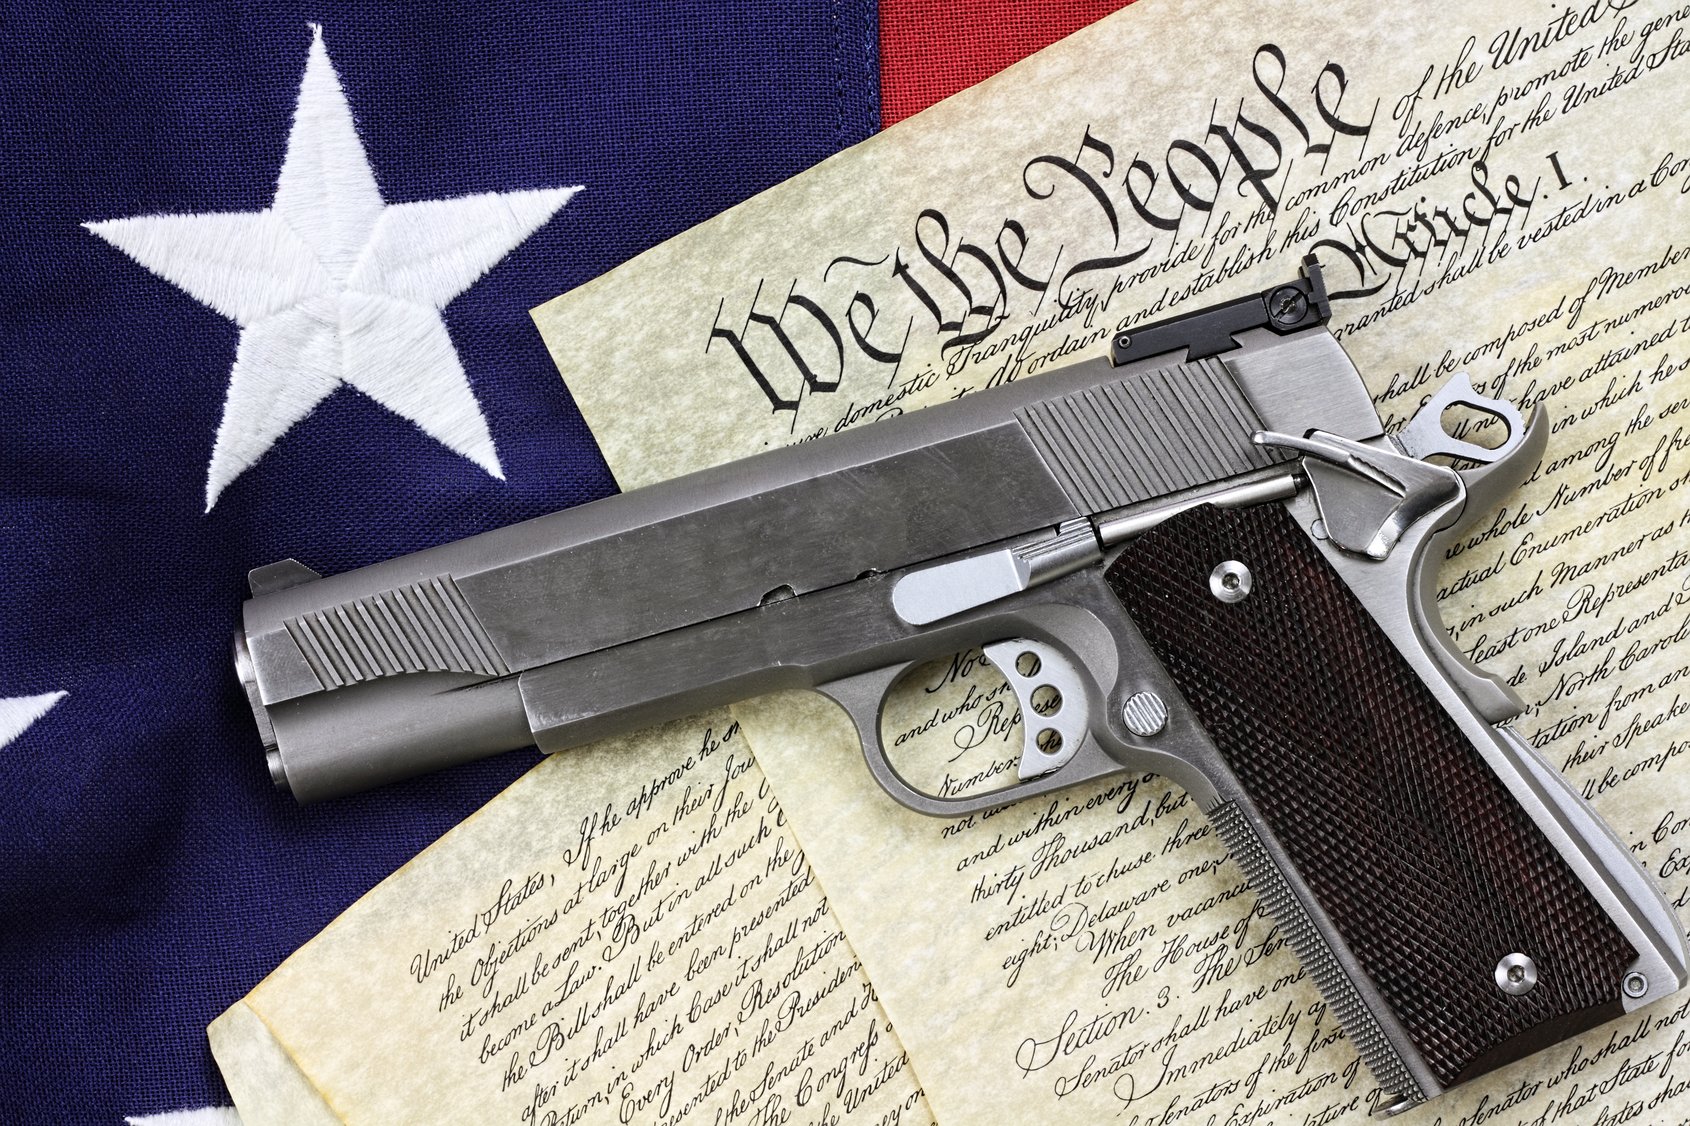 Firearms License Fears Often Unwarranted